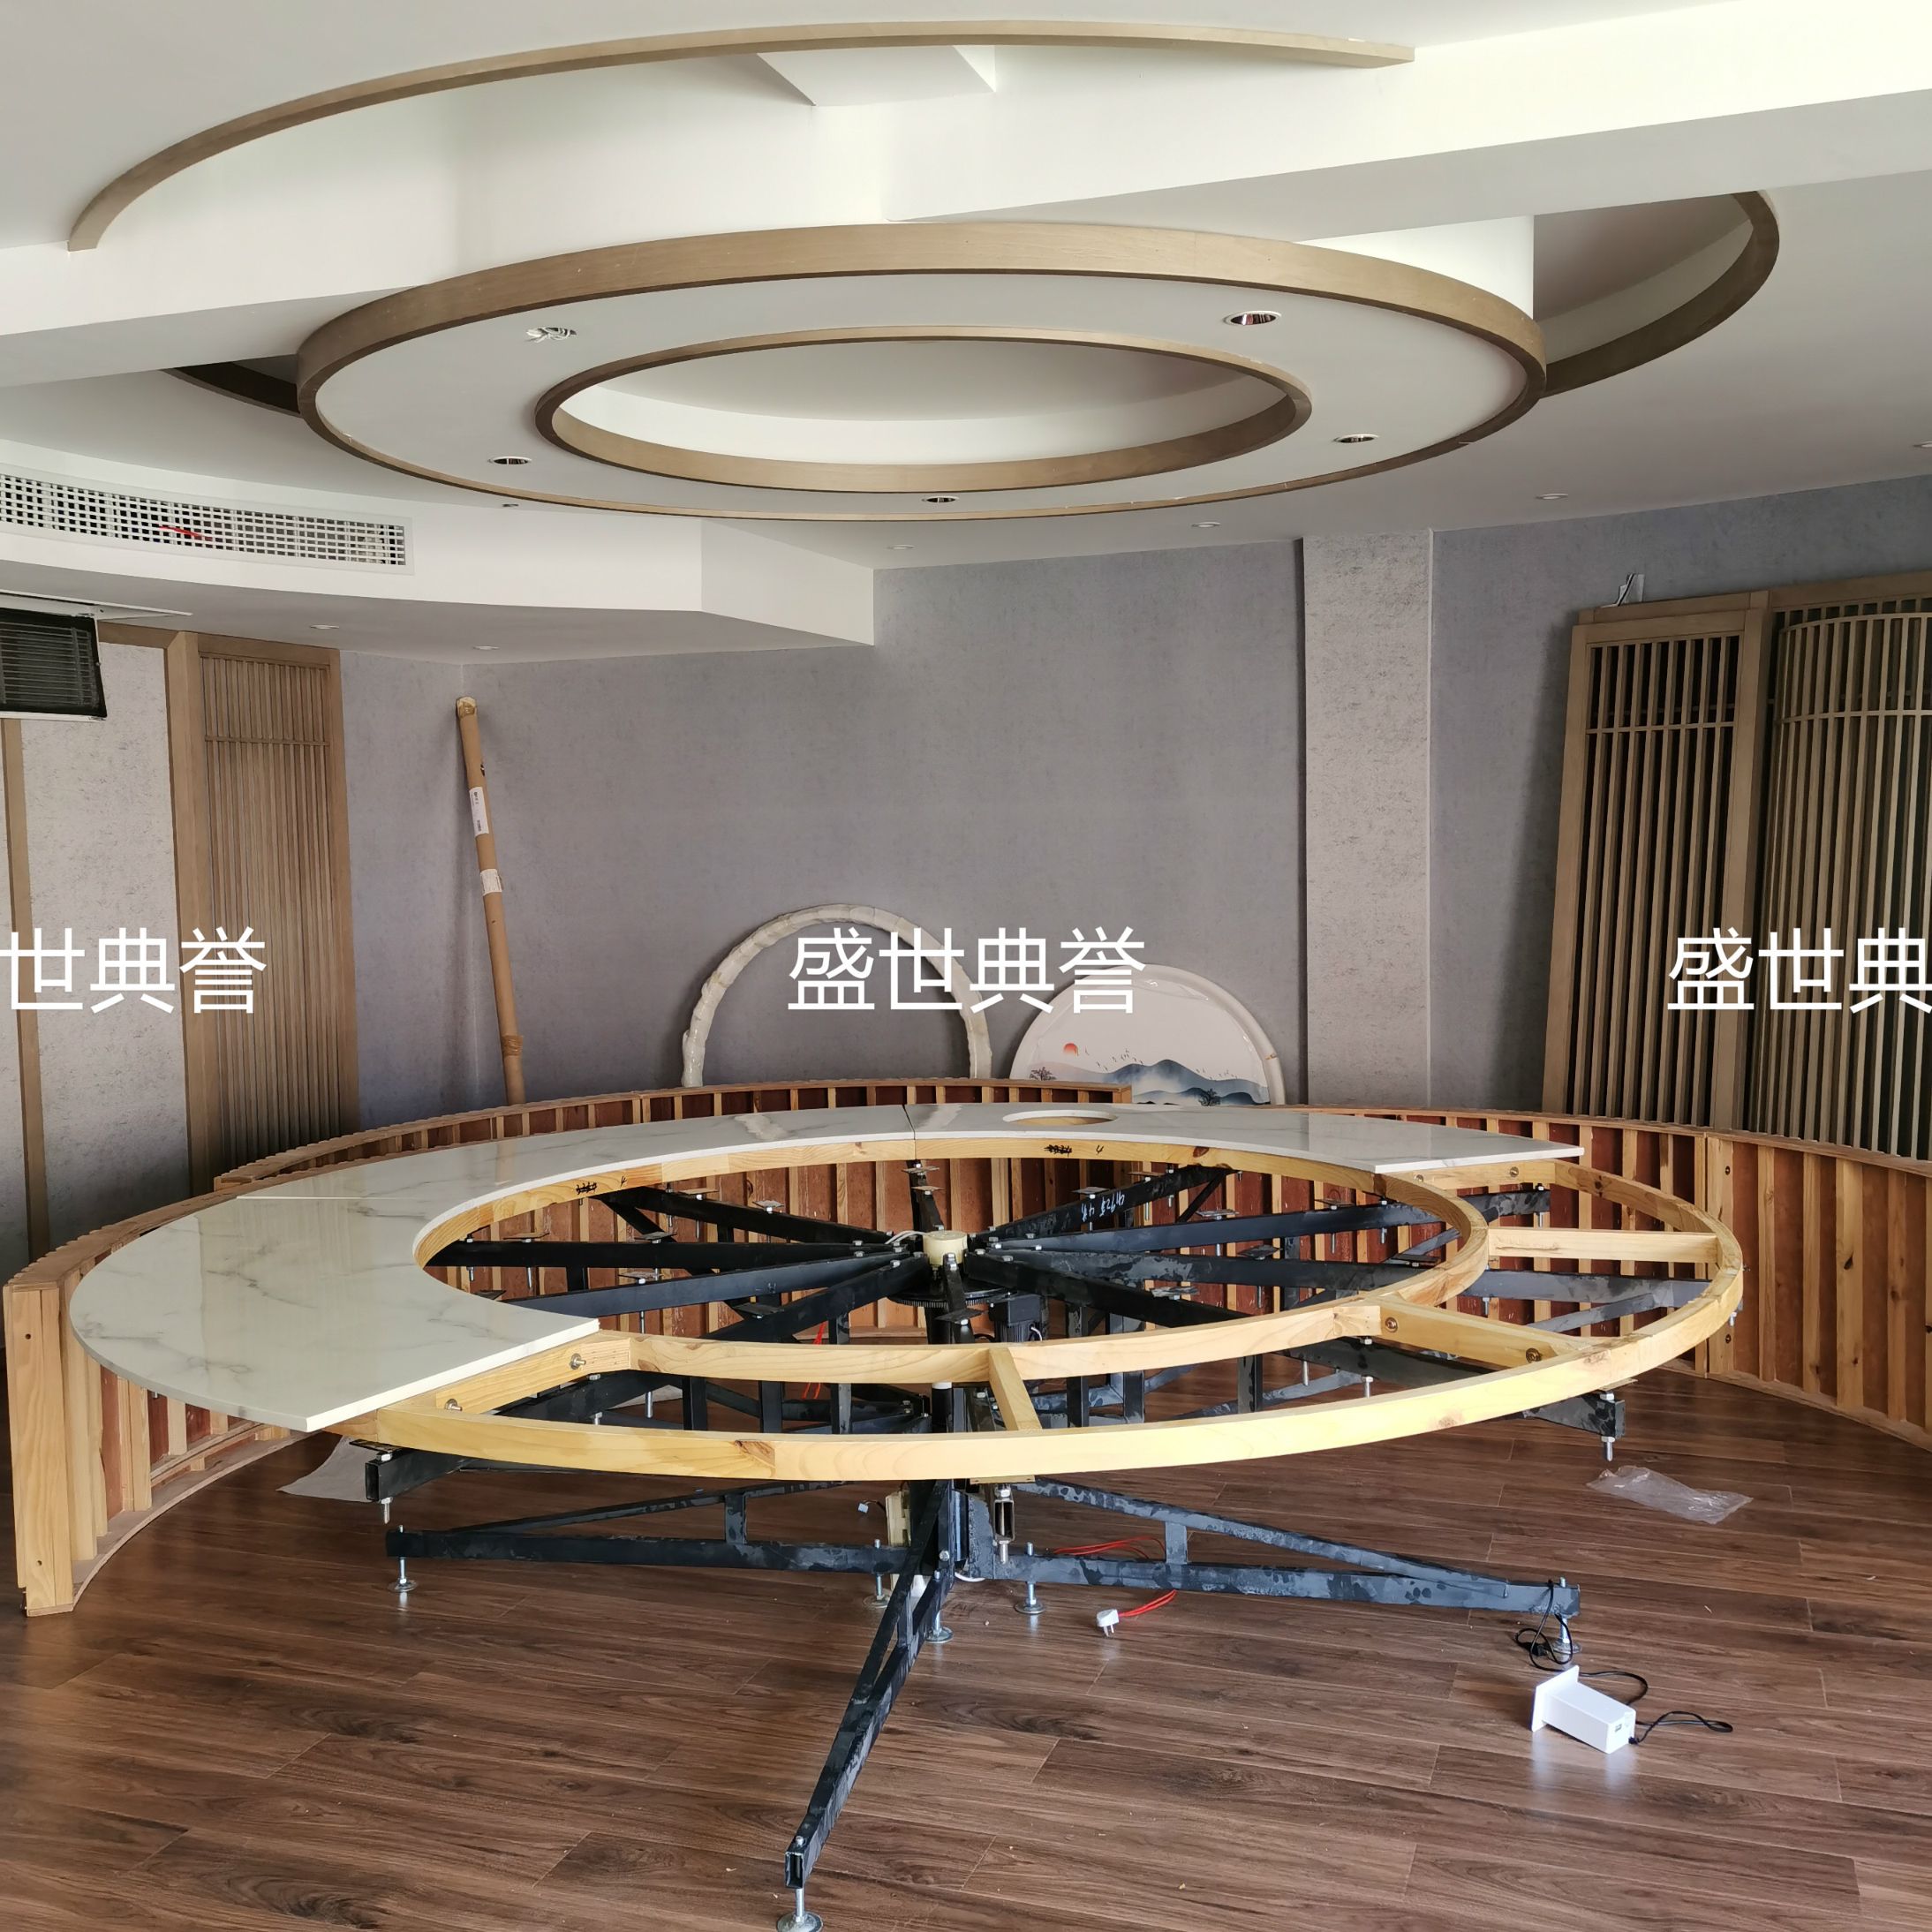 贵阳五星级酒店包厢电动桌椅饭店新中式大理石电动桌自动旋转餐桌详情图5